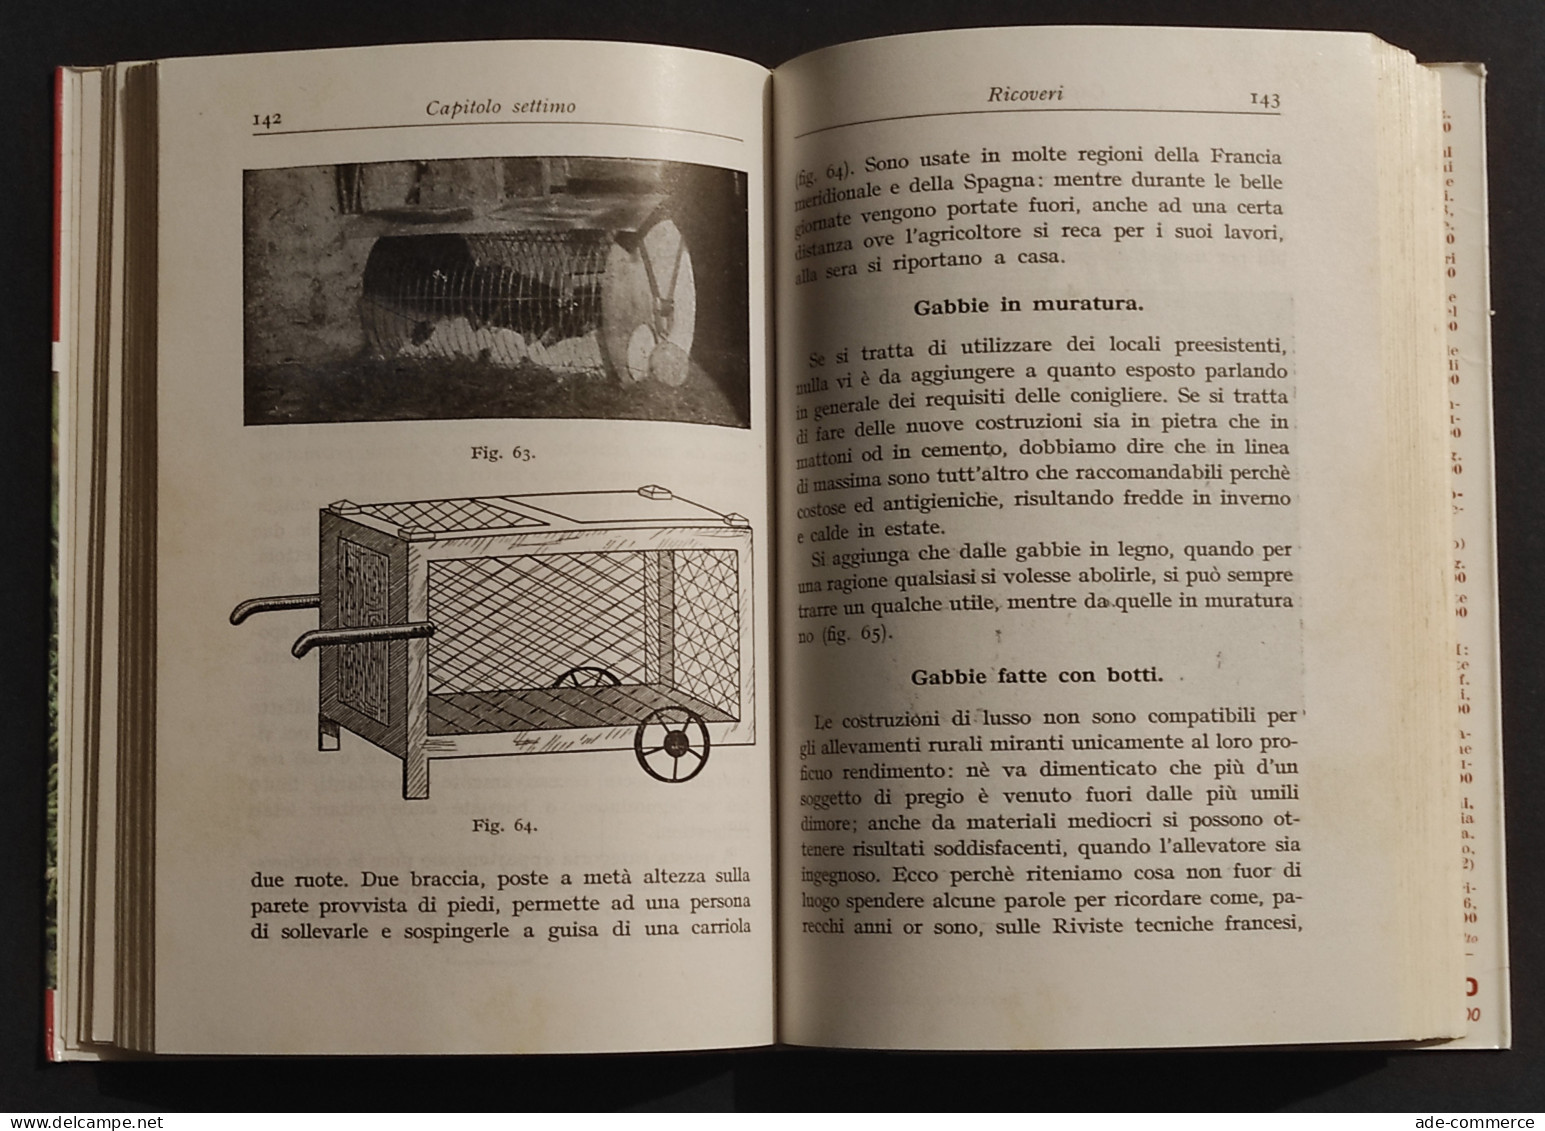 Coniglicoltura Pratica -  G. Licciardelli - M. Cortese - Ed. Hoepli - 1962 - Tiere